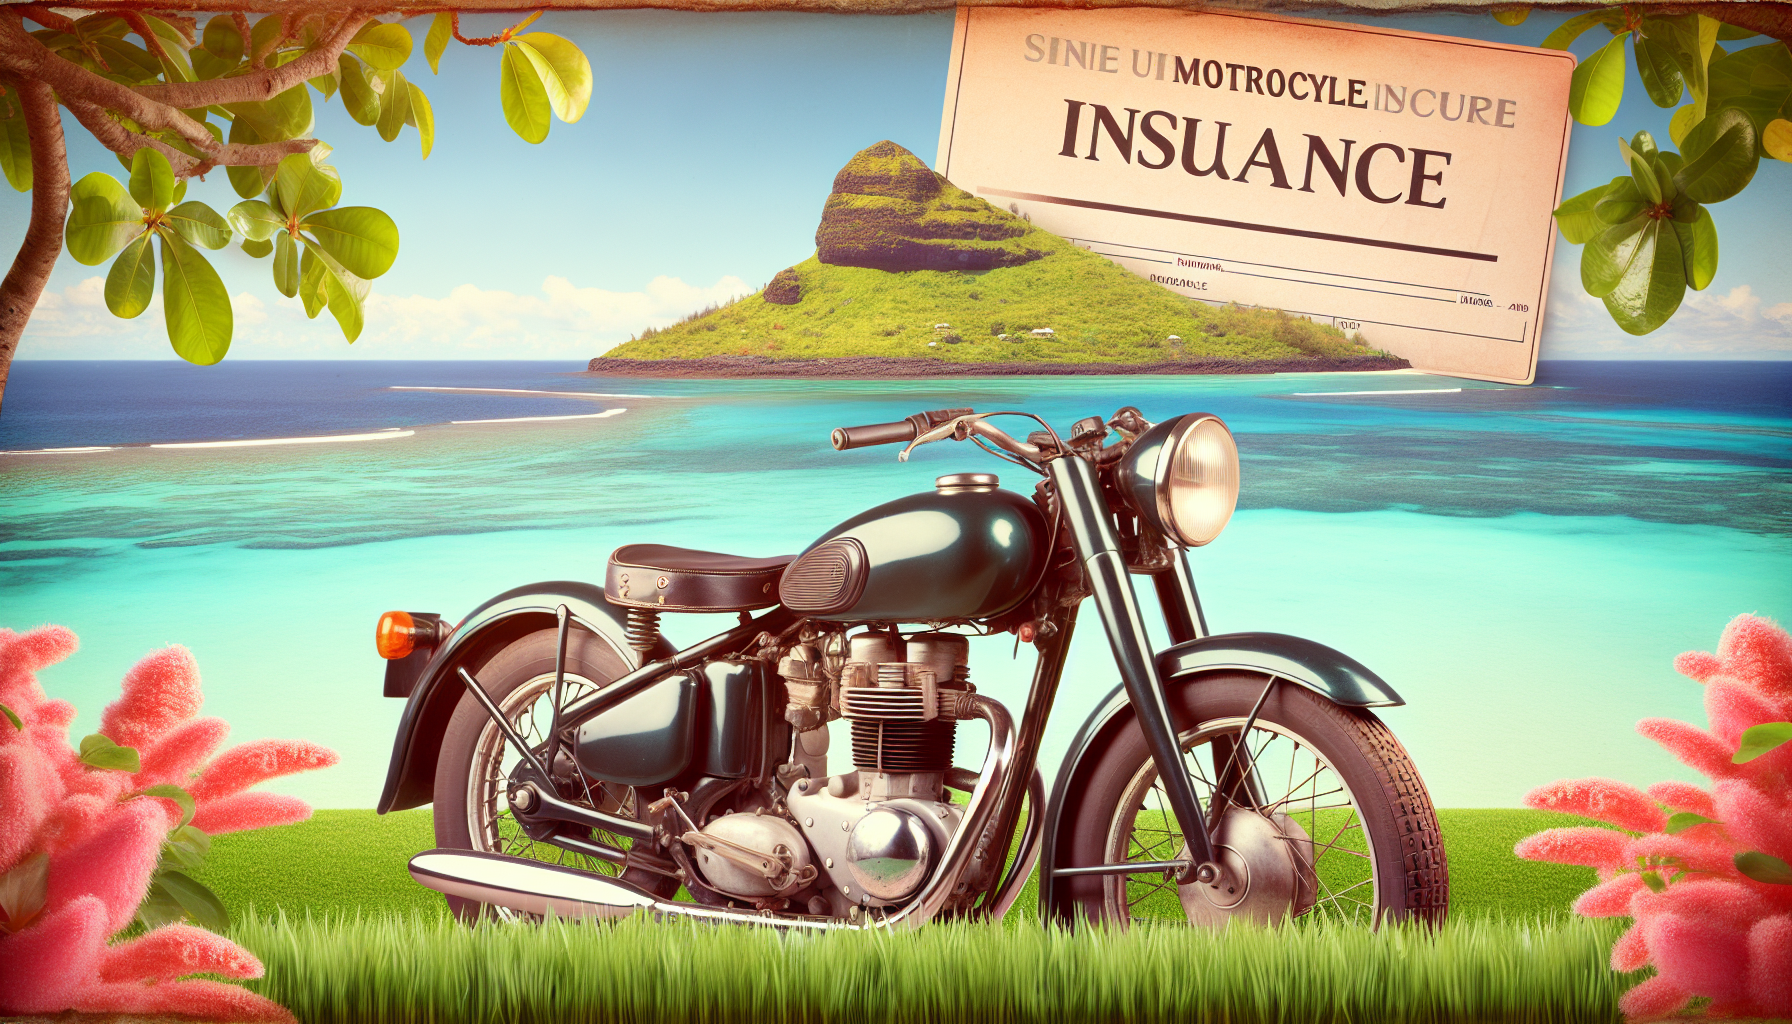 assurance moto à la réunion : découvrez comment assurer une moto de collection sur l'île. obtenez des informations et des conseils pour assurer votre moto ancienne à la réunion.